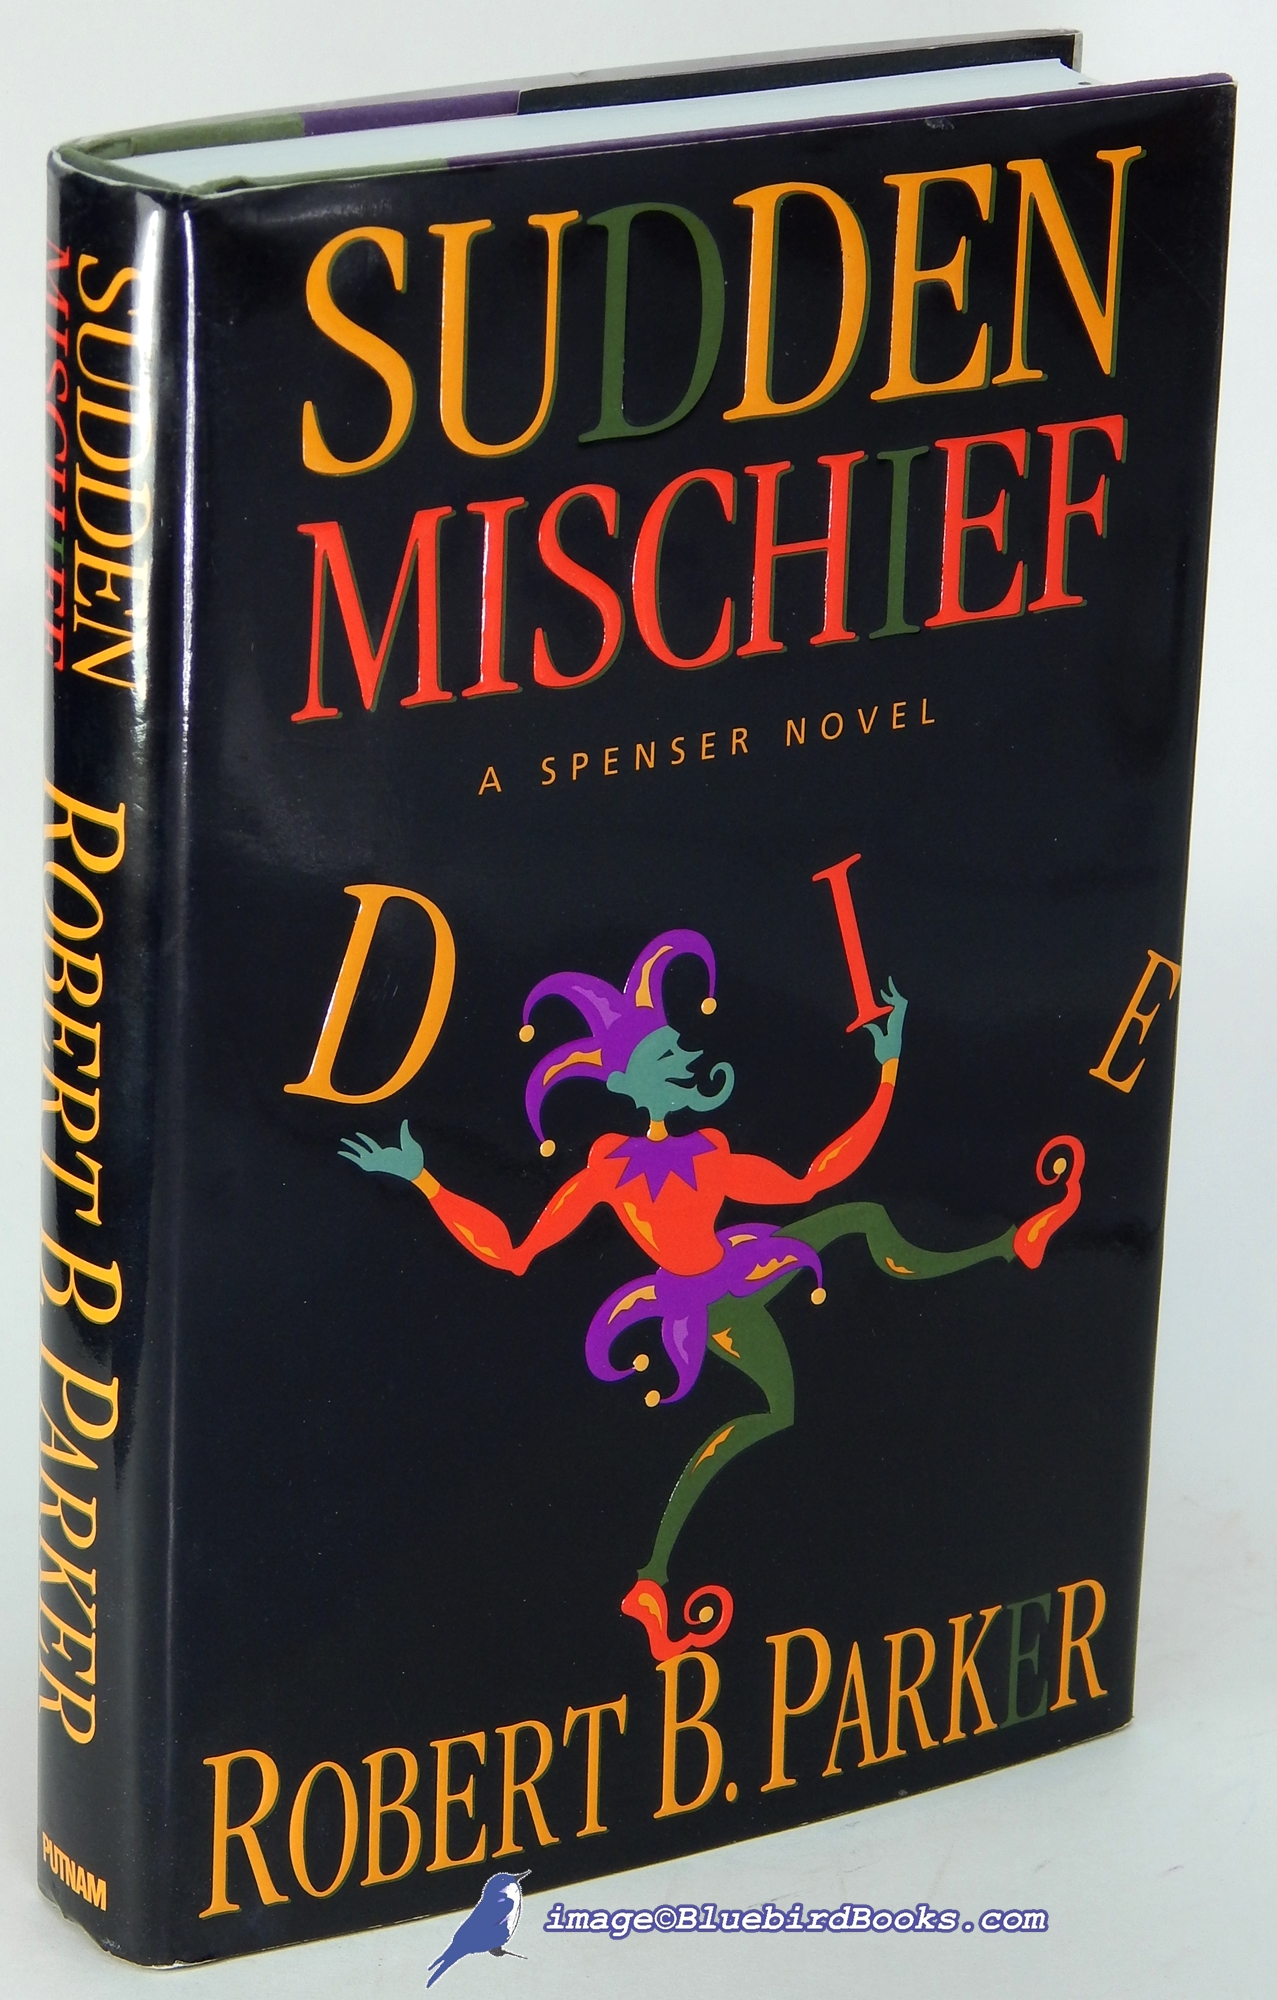 PARKER, ROBERT B. - Sudden Mischief: A Spenser Novel